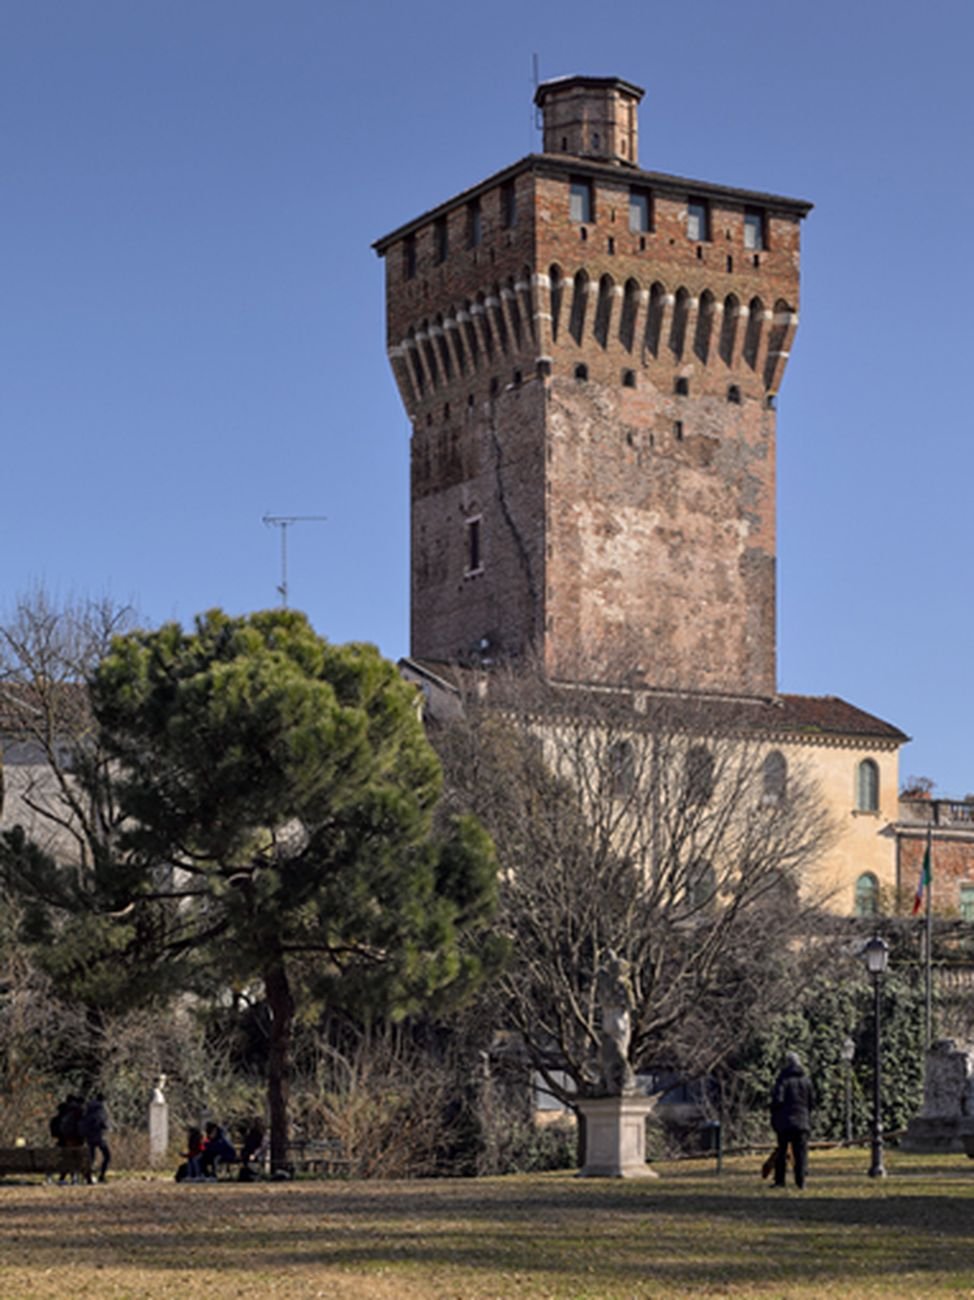 Fondazione Coppola, Torrione di Porta Castello, Vicenza. Photo Francesco Castagna